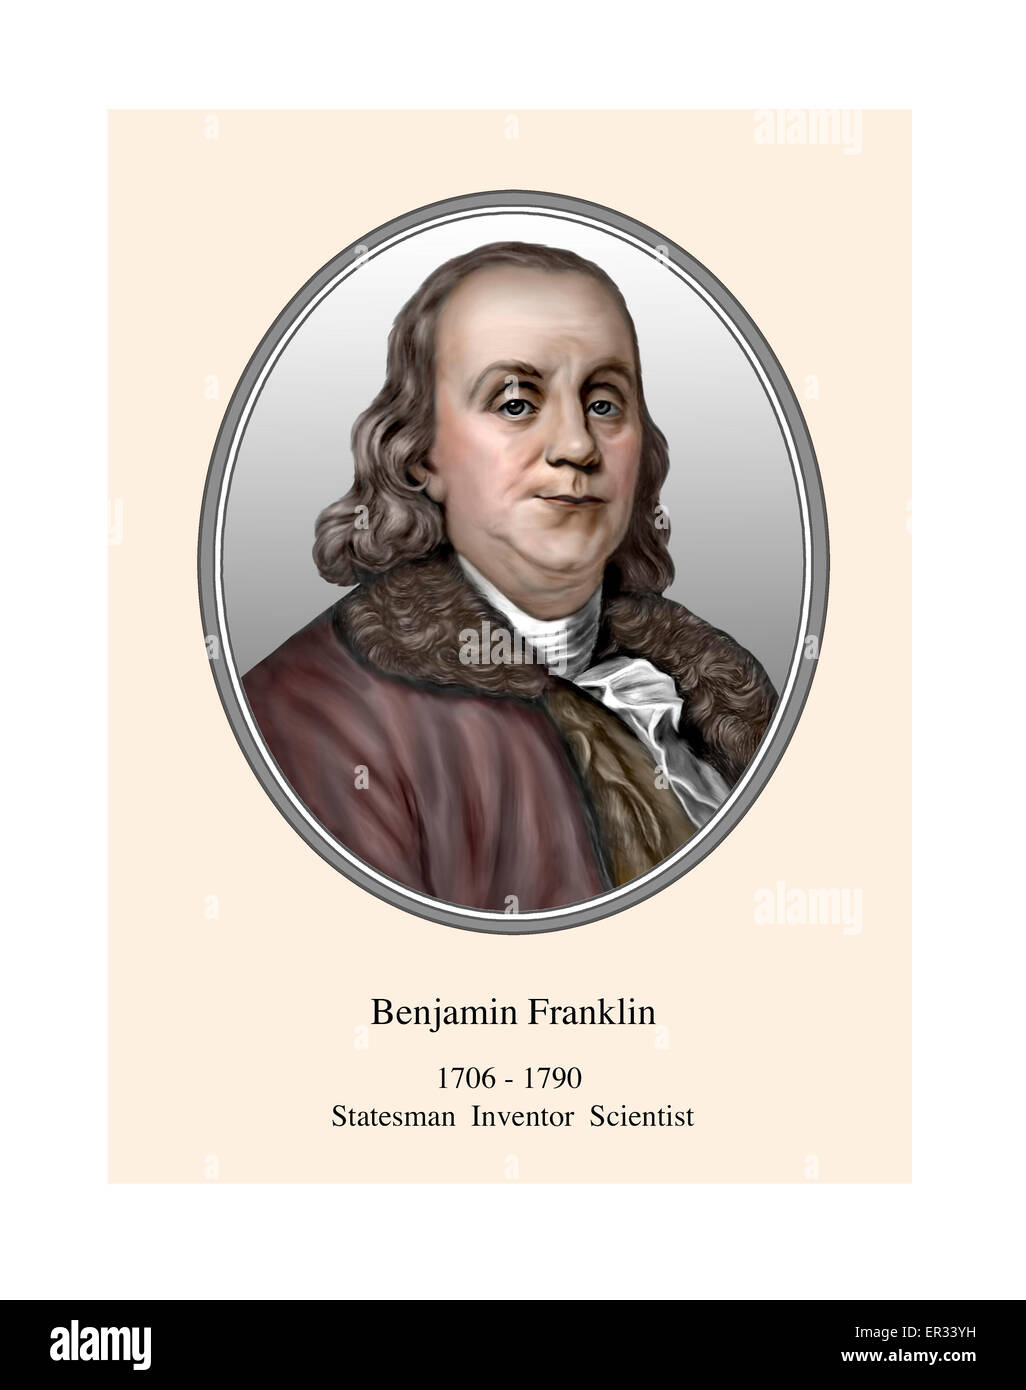 Portrait de Benjamin Franklin Illustration moderne Banque D'Images